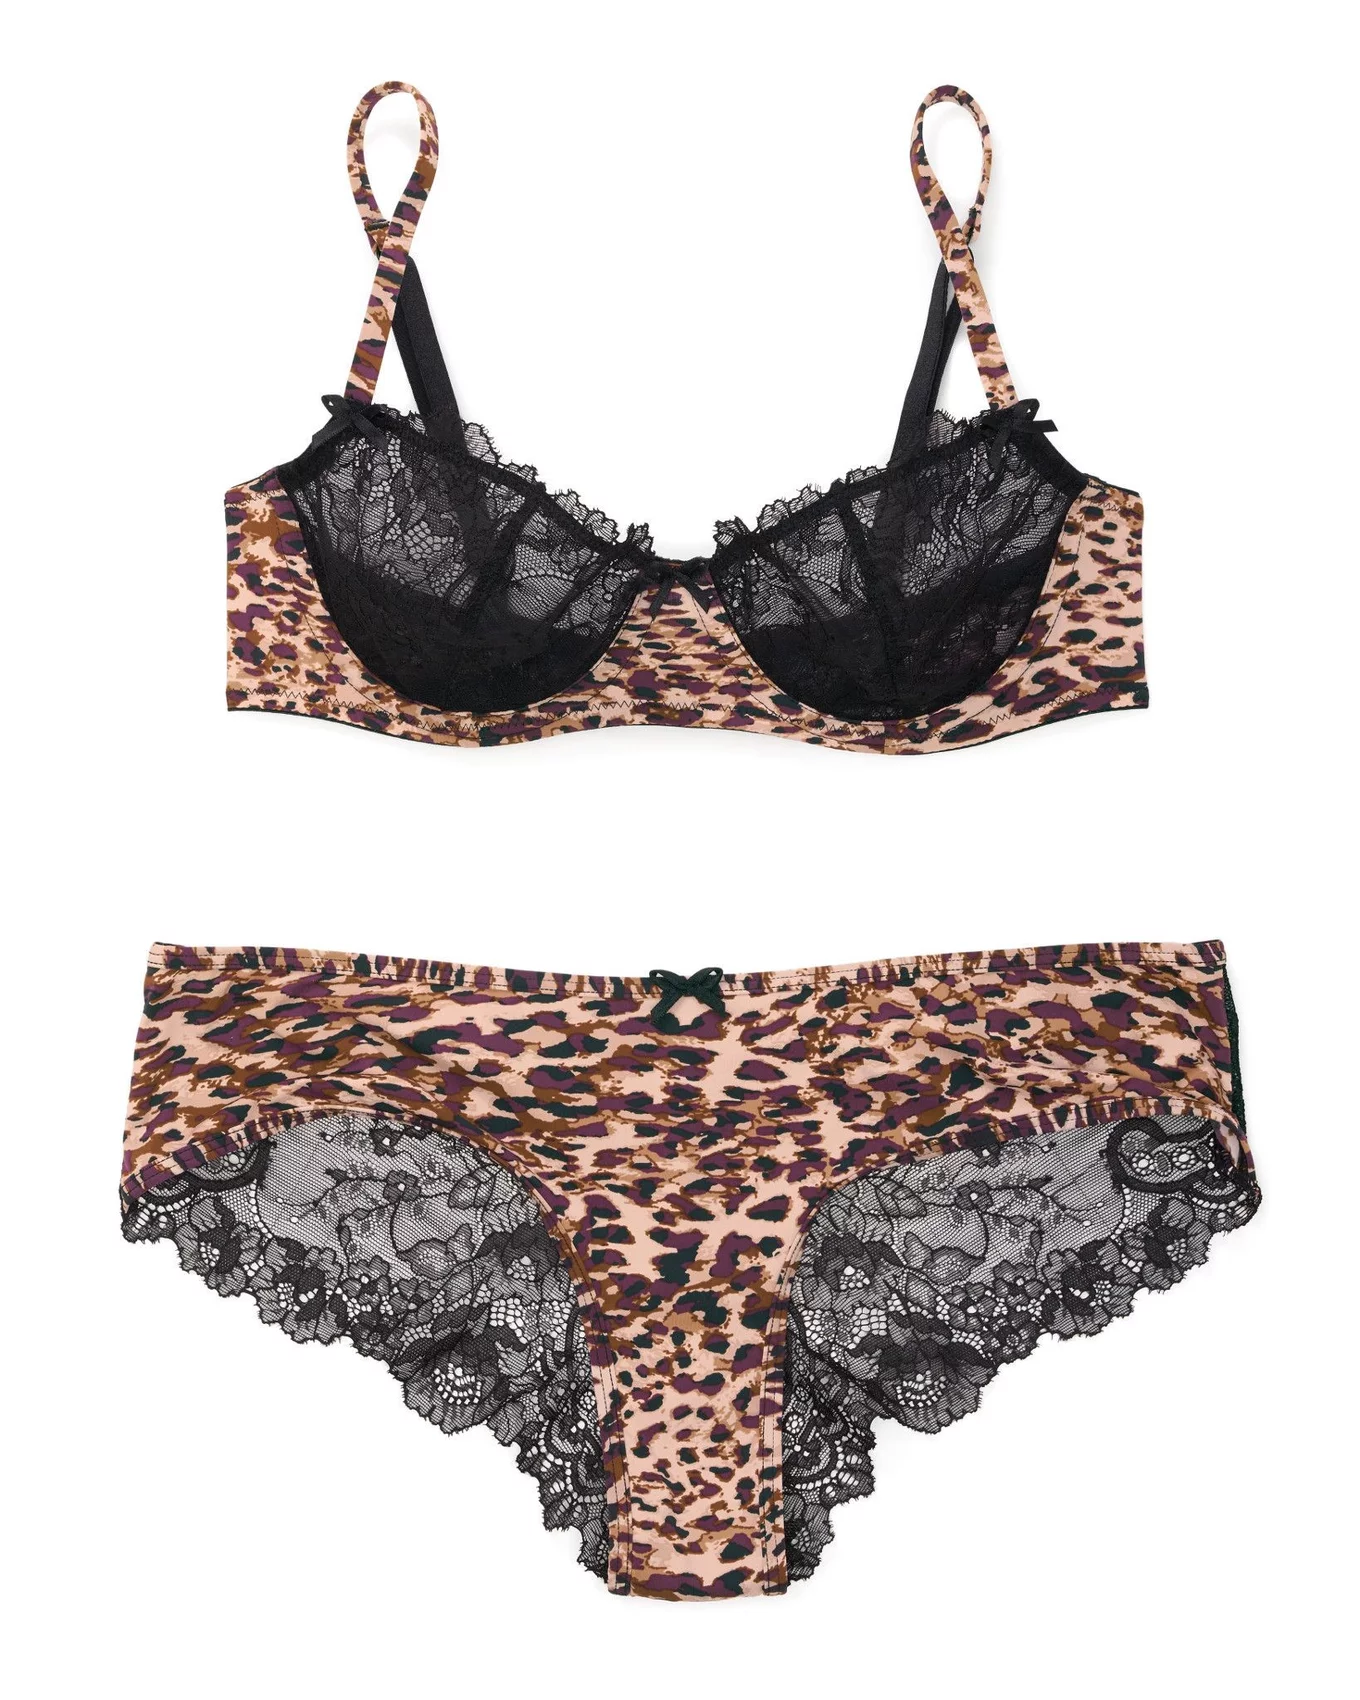 amantha gunasekara recommends cheetah print bra and panties pic